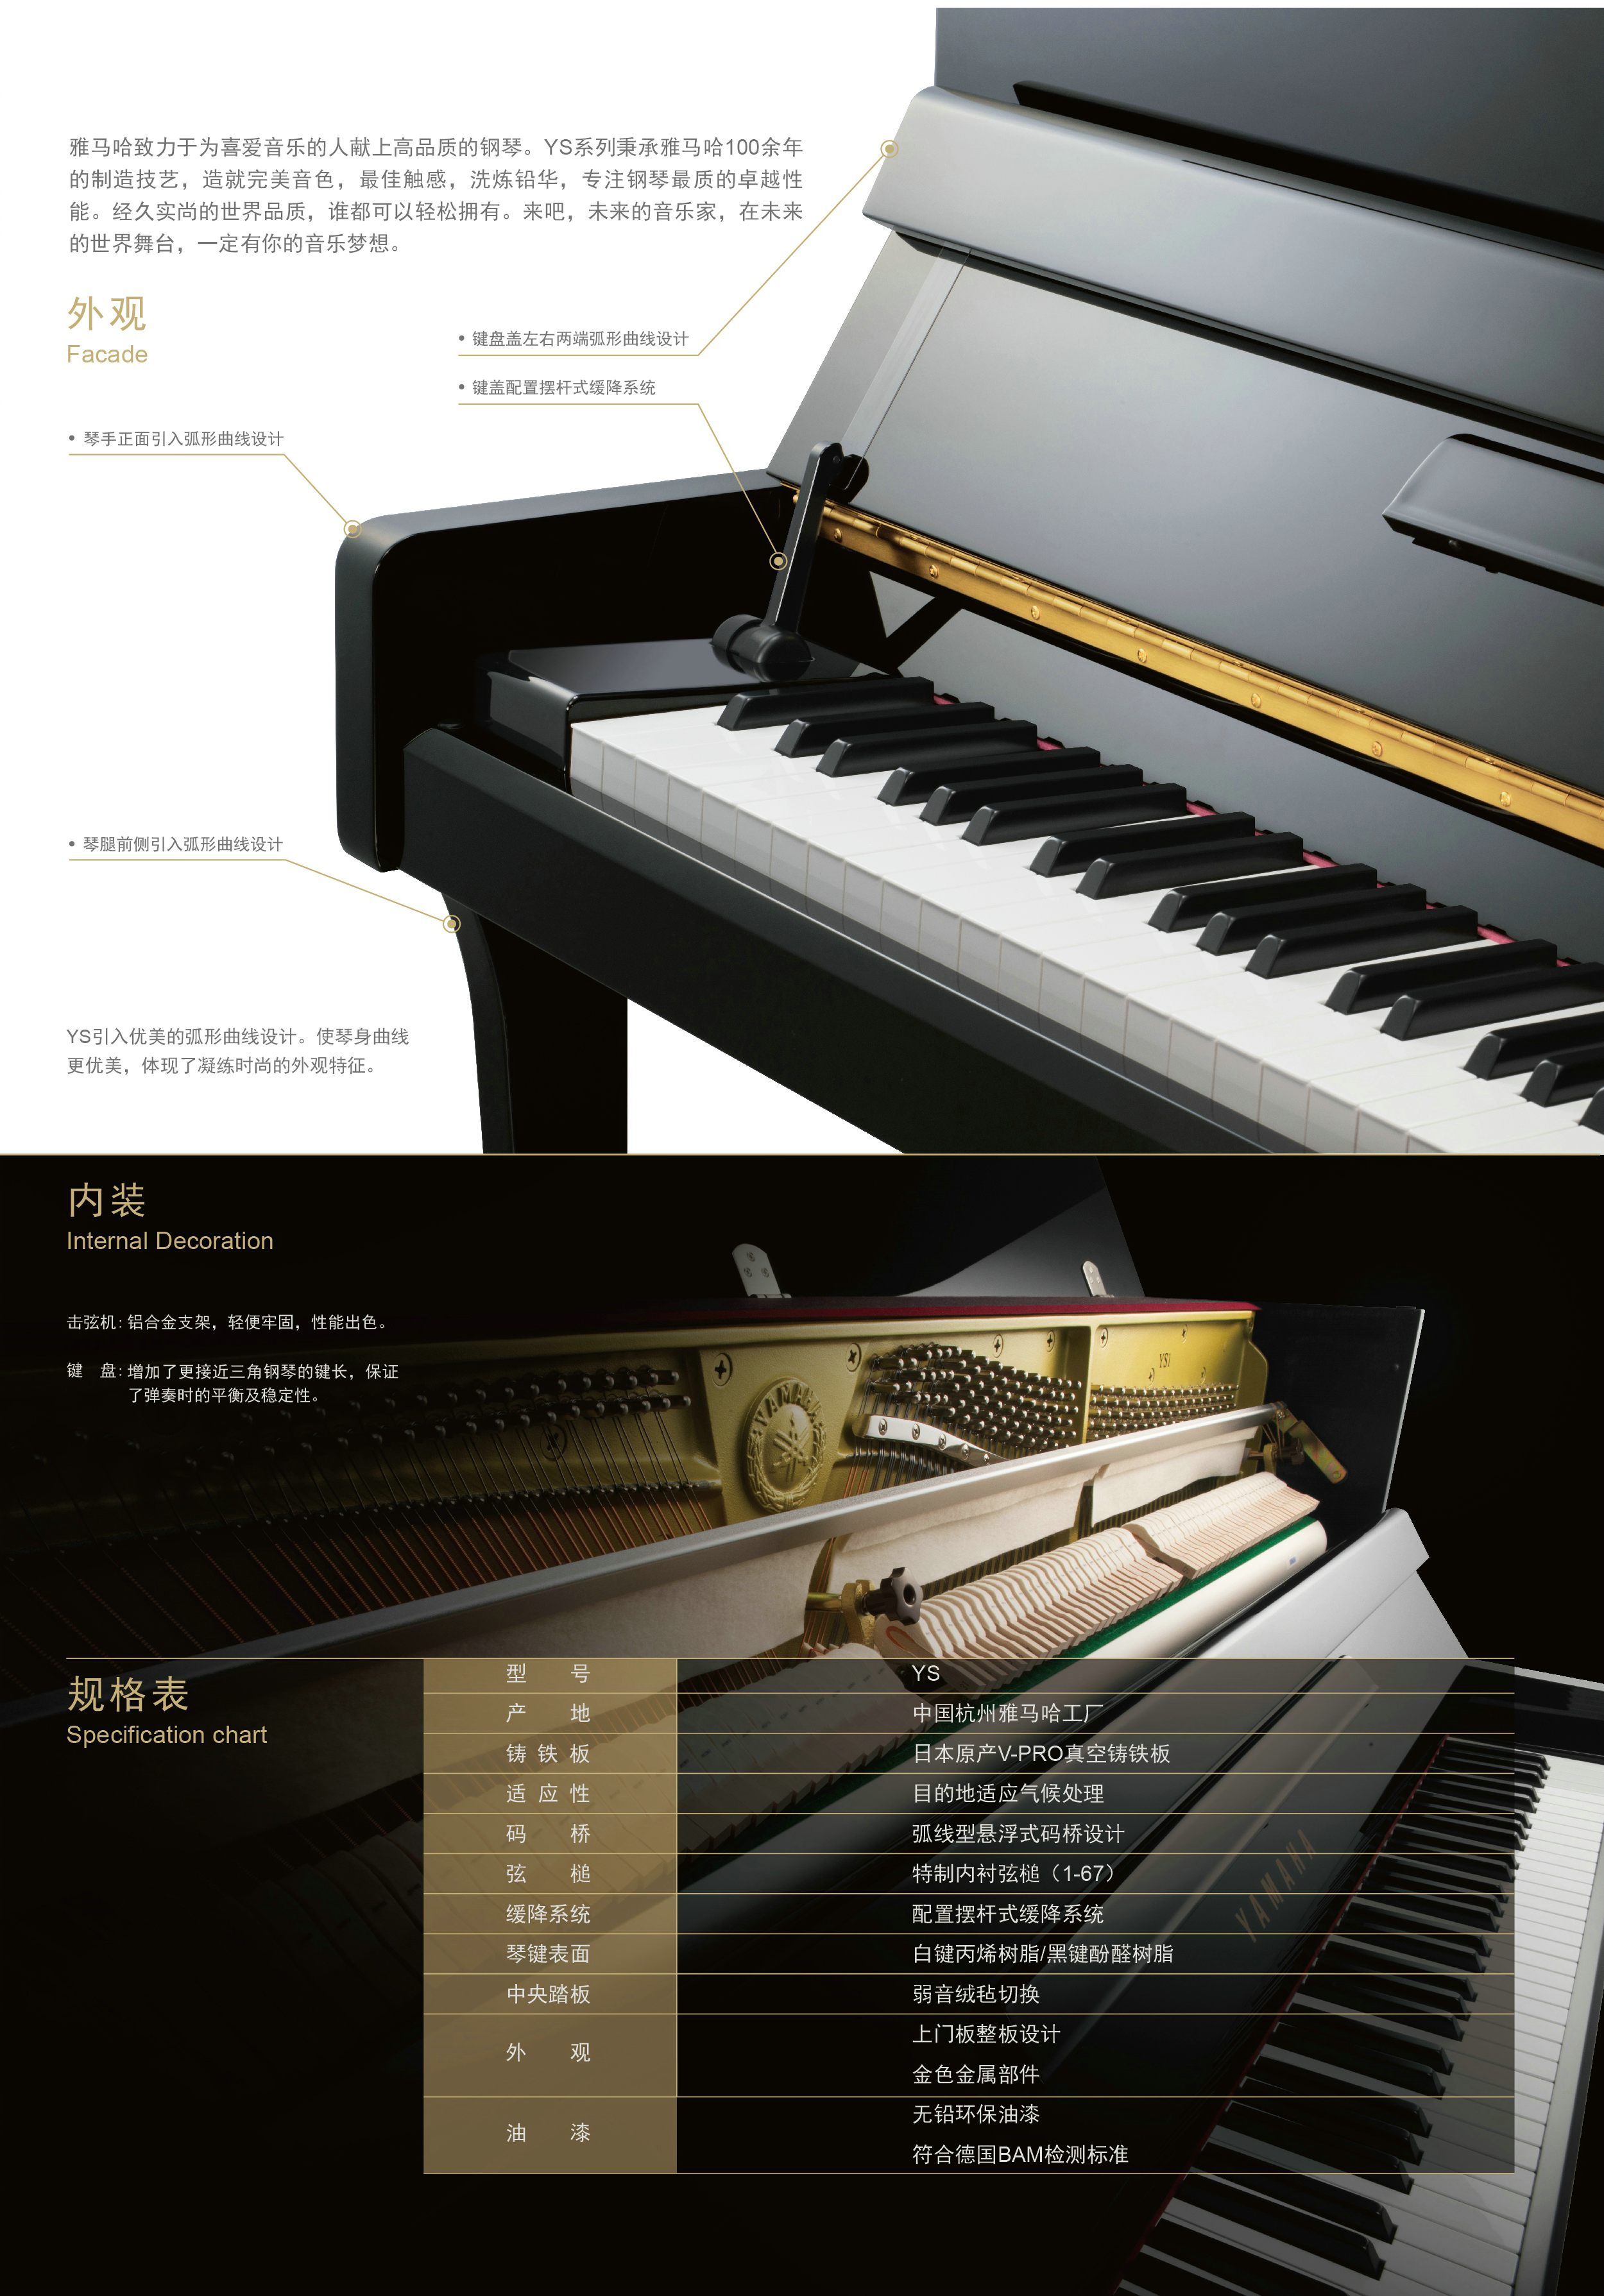 全新的Betway必威App体育
钢琴YS系列现已到来